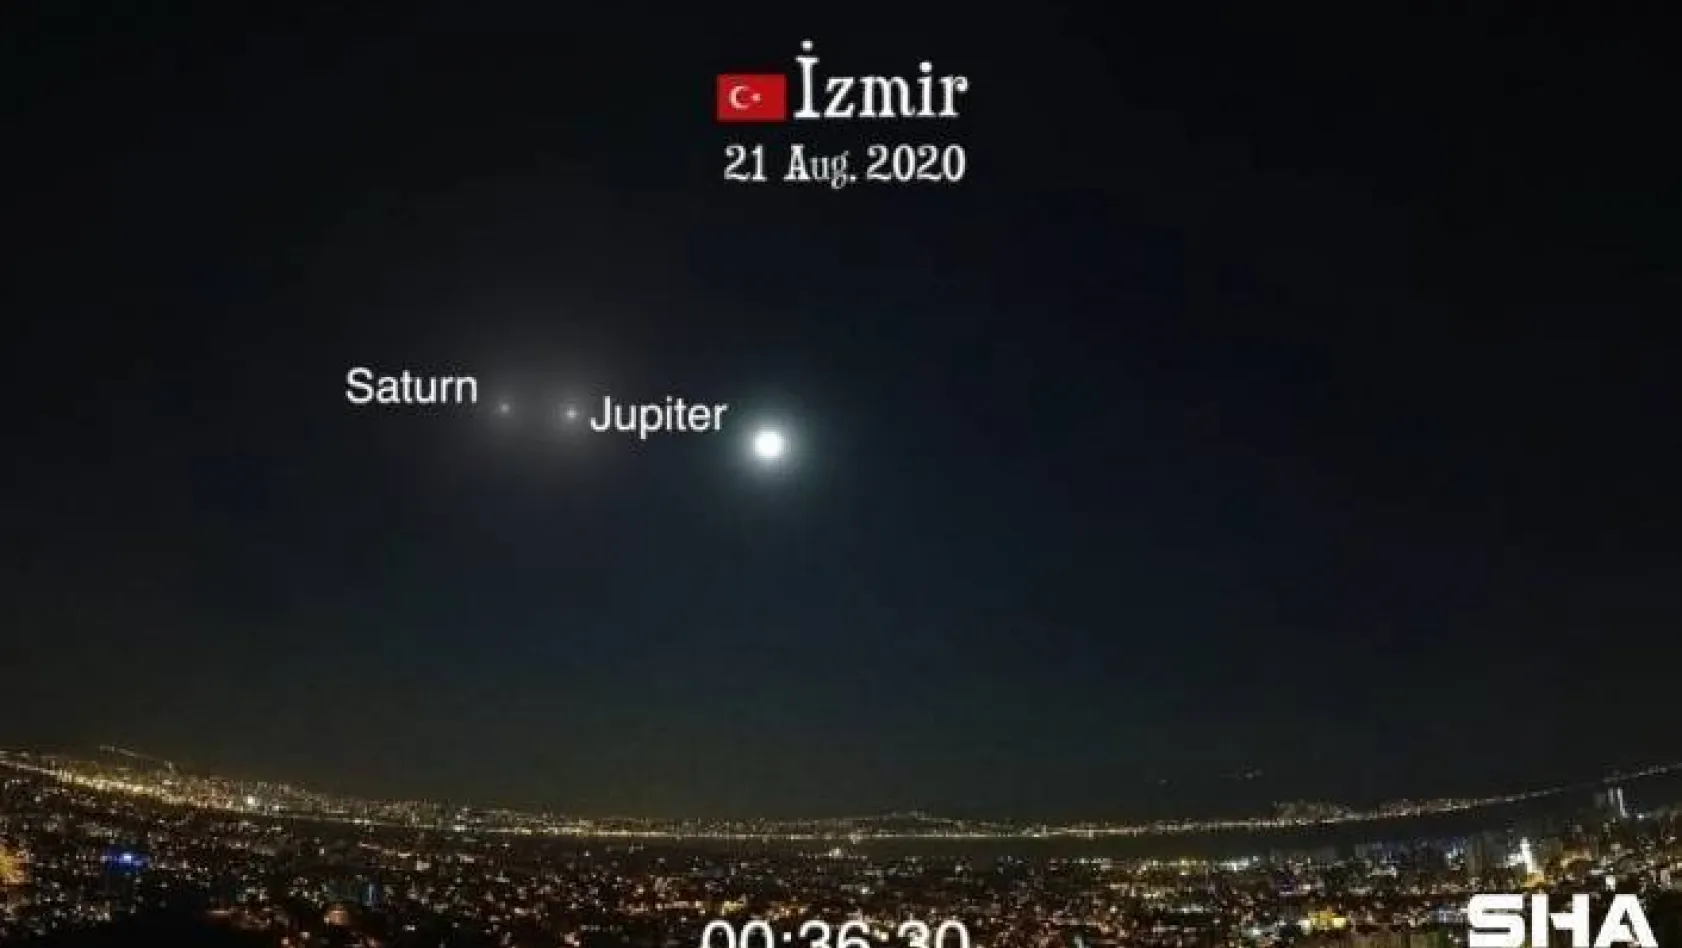 (ÖZEL) Jüpiter ile Satürn'ün büyük buluşması